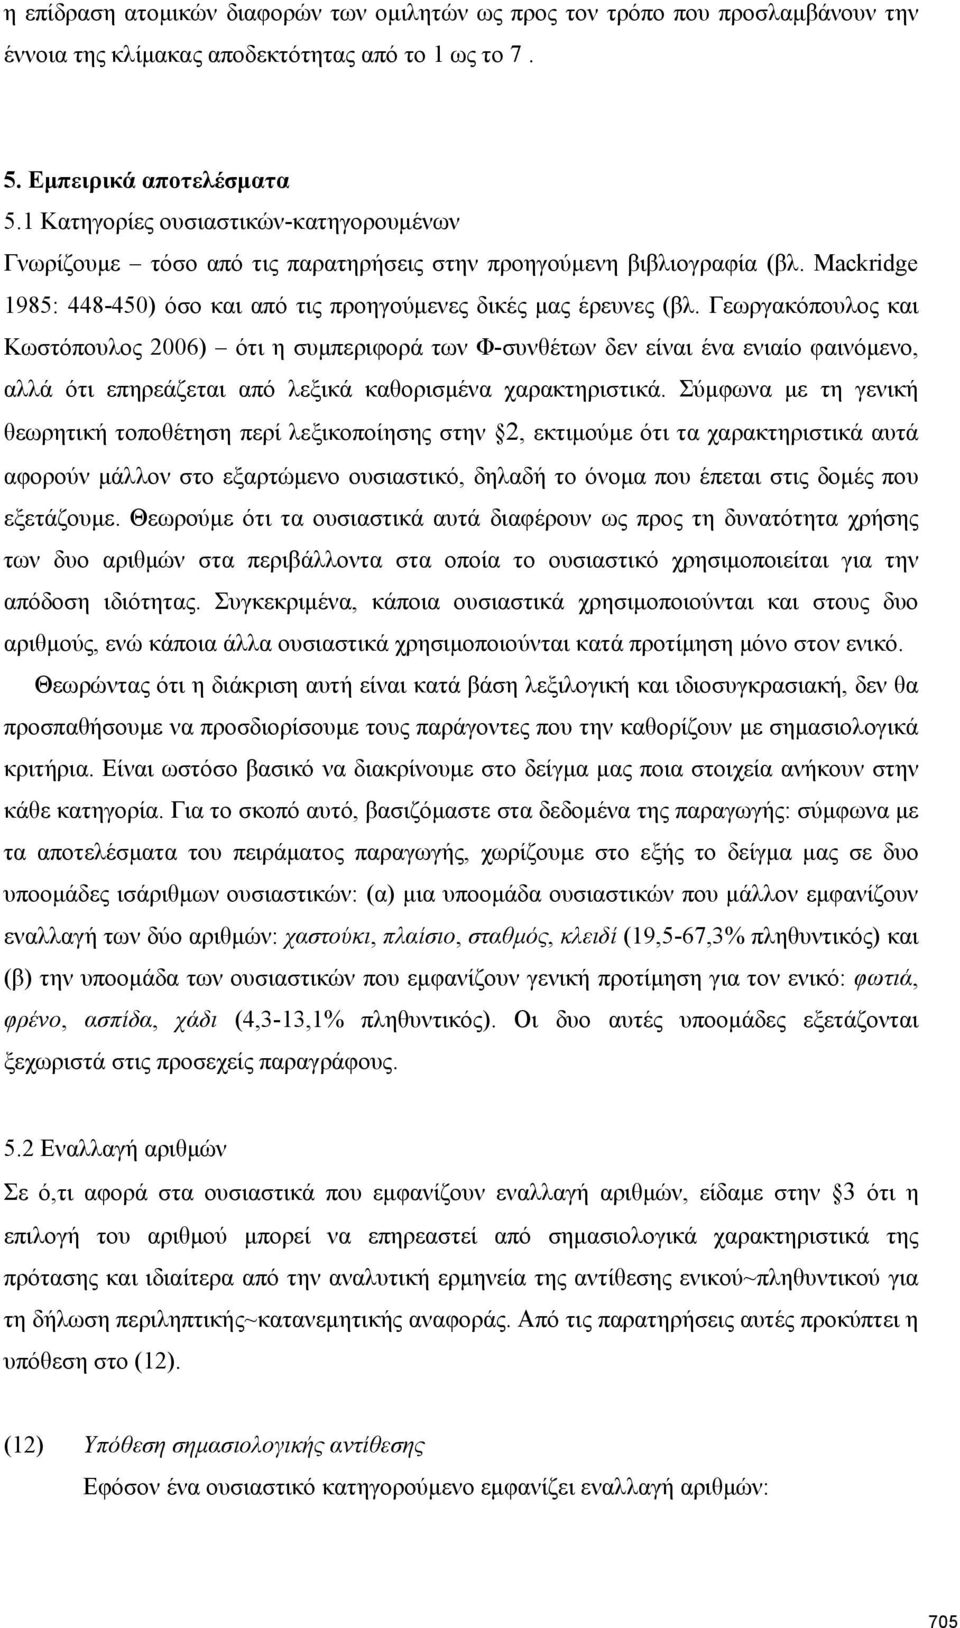 Γεωργακόπουλος και Κωστόπουλος 2006) ότι η συμπεριφορά των Φ-συνθέτων δεν είναι ένα ενιαίο φαινόμενο, αλλά ότι επηρεάζεται από λεξικά καθορισμένα χαρακτηριστικά.